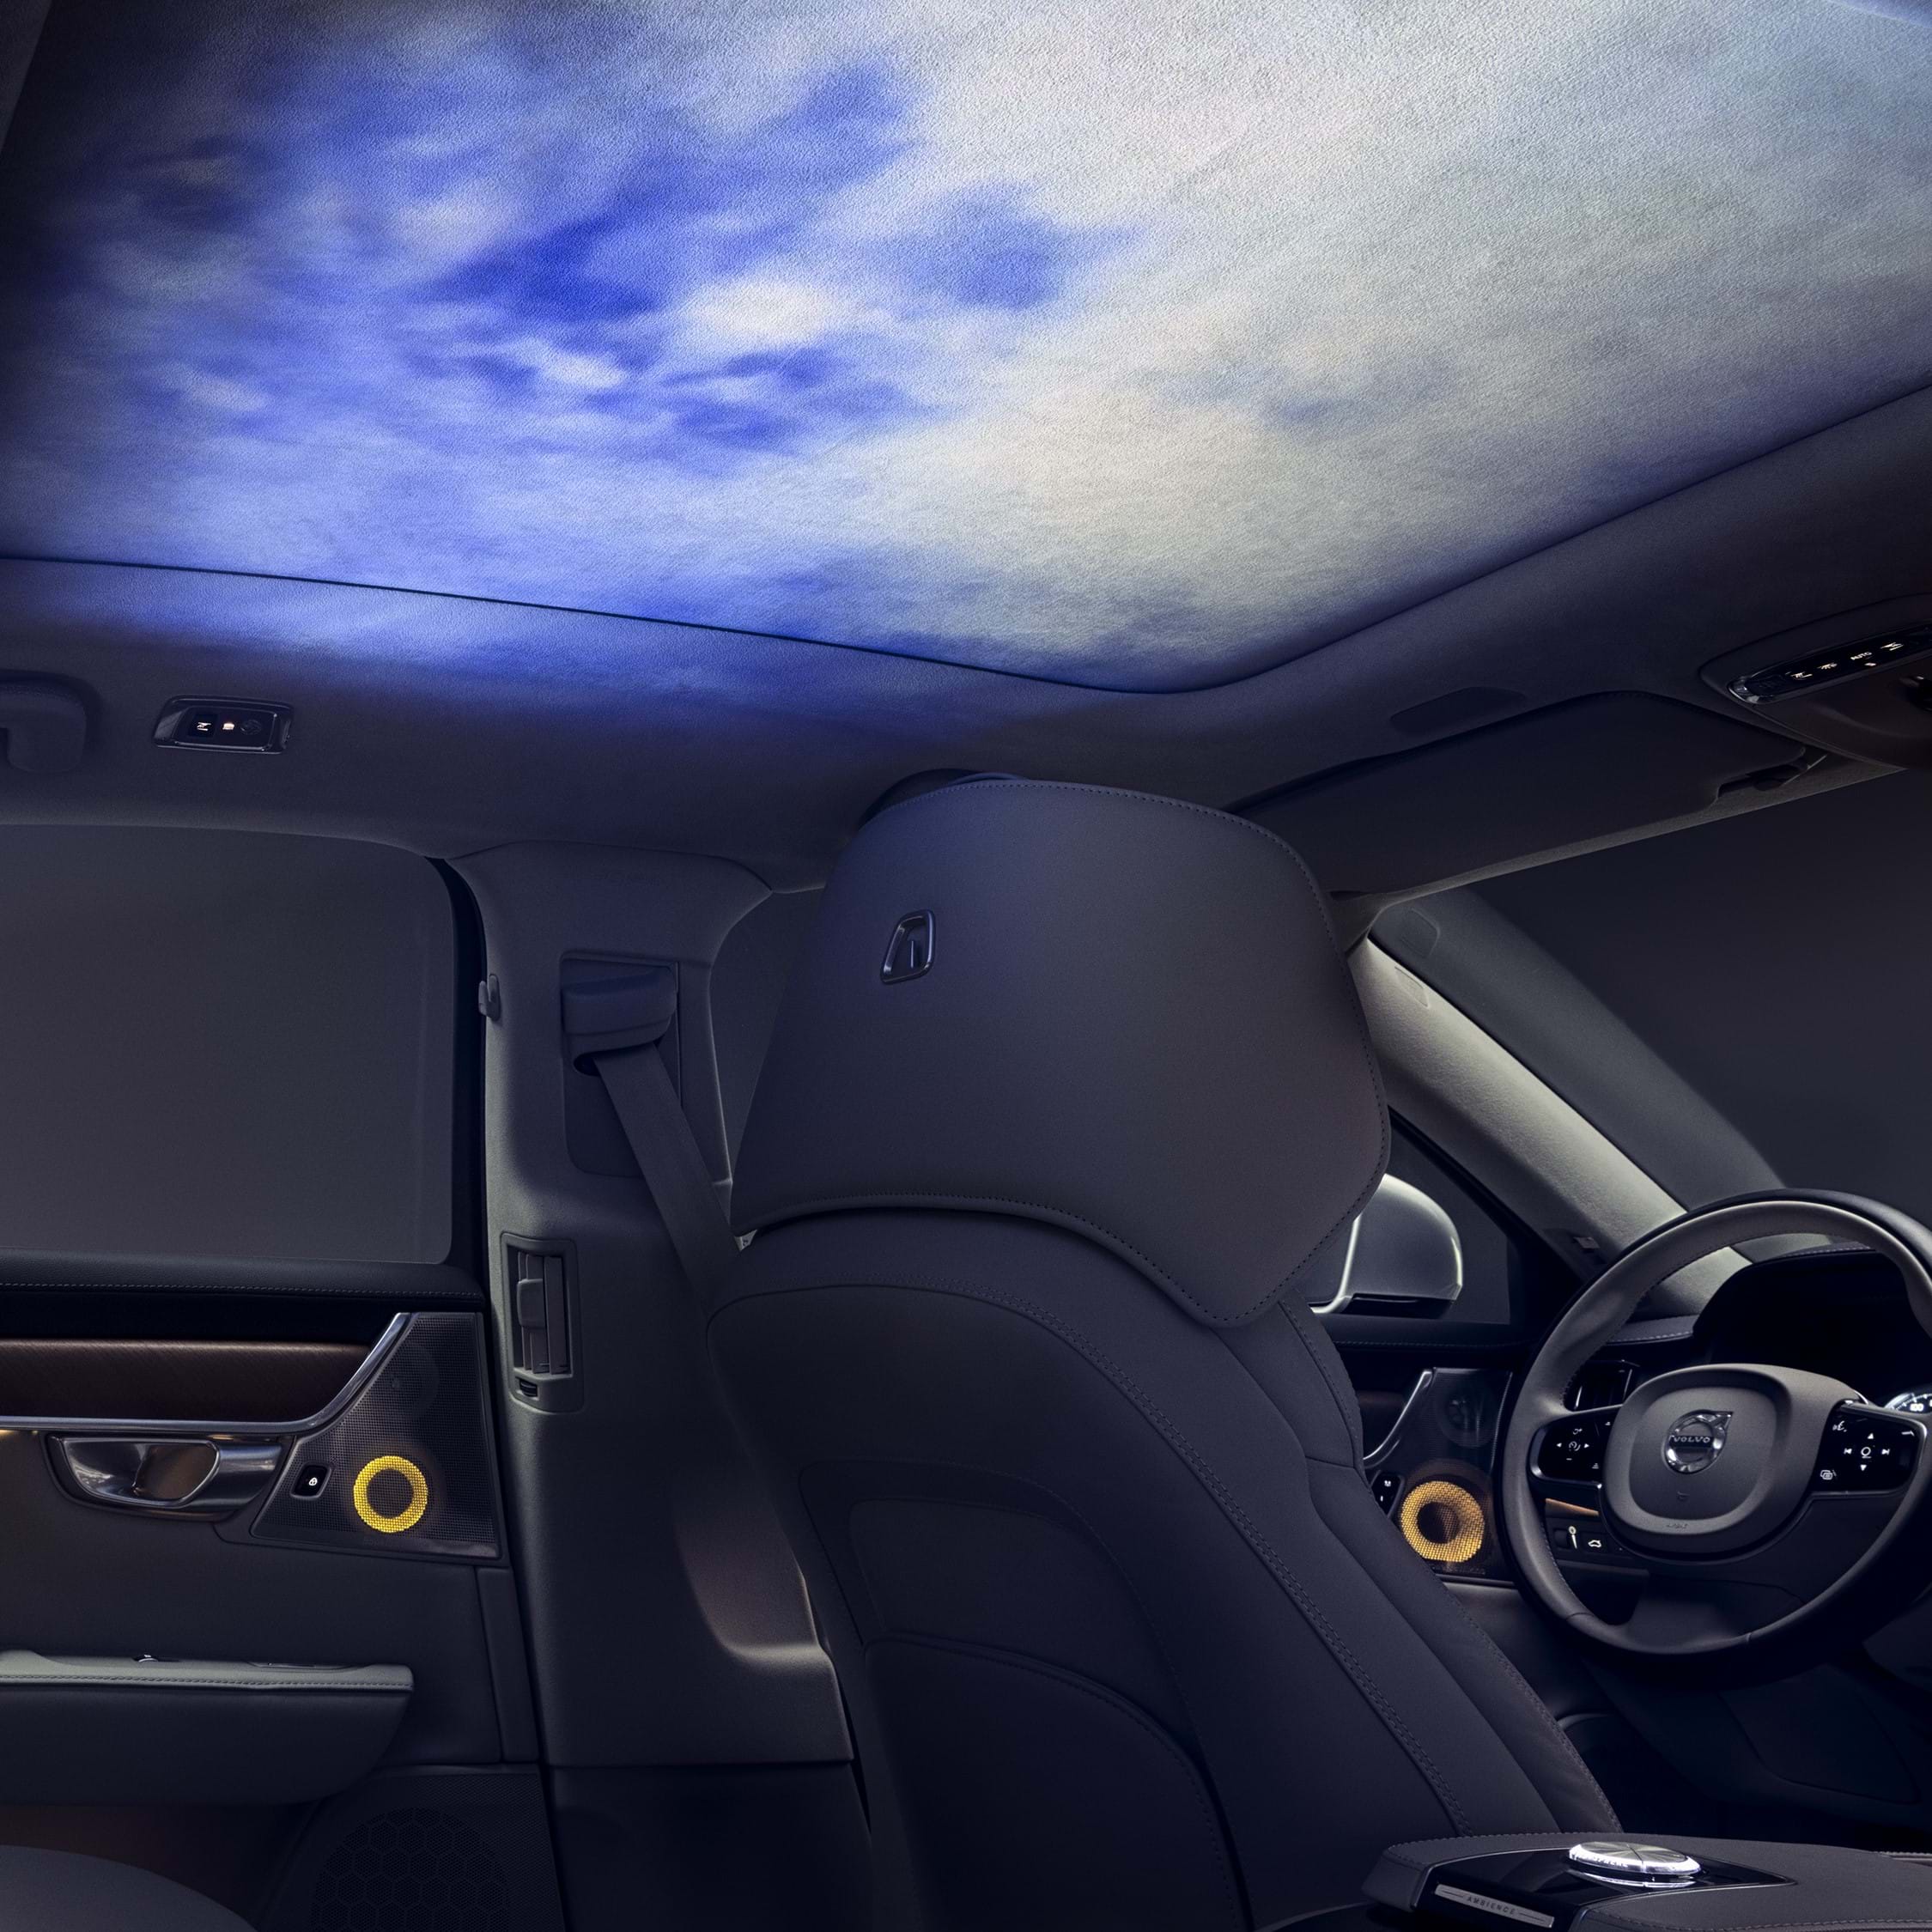 Interiér vozu Volvo s náladovým osvětlením promítaným na strop kabiny